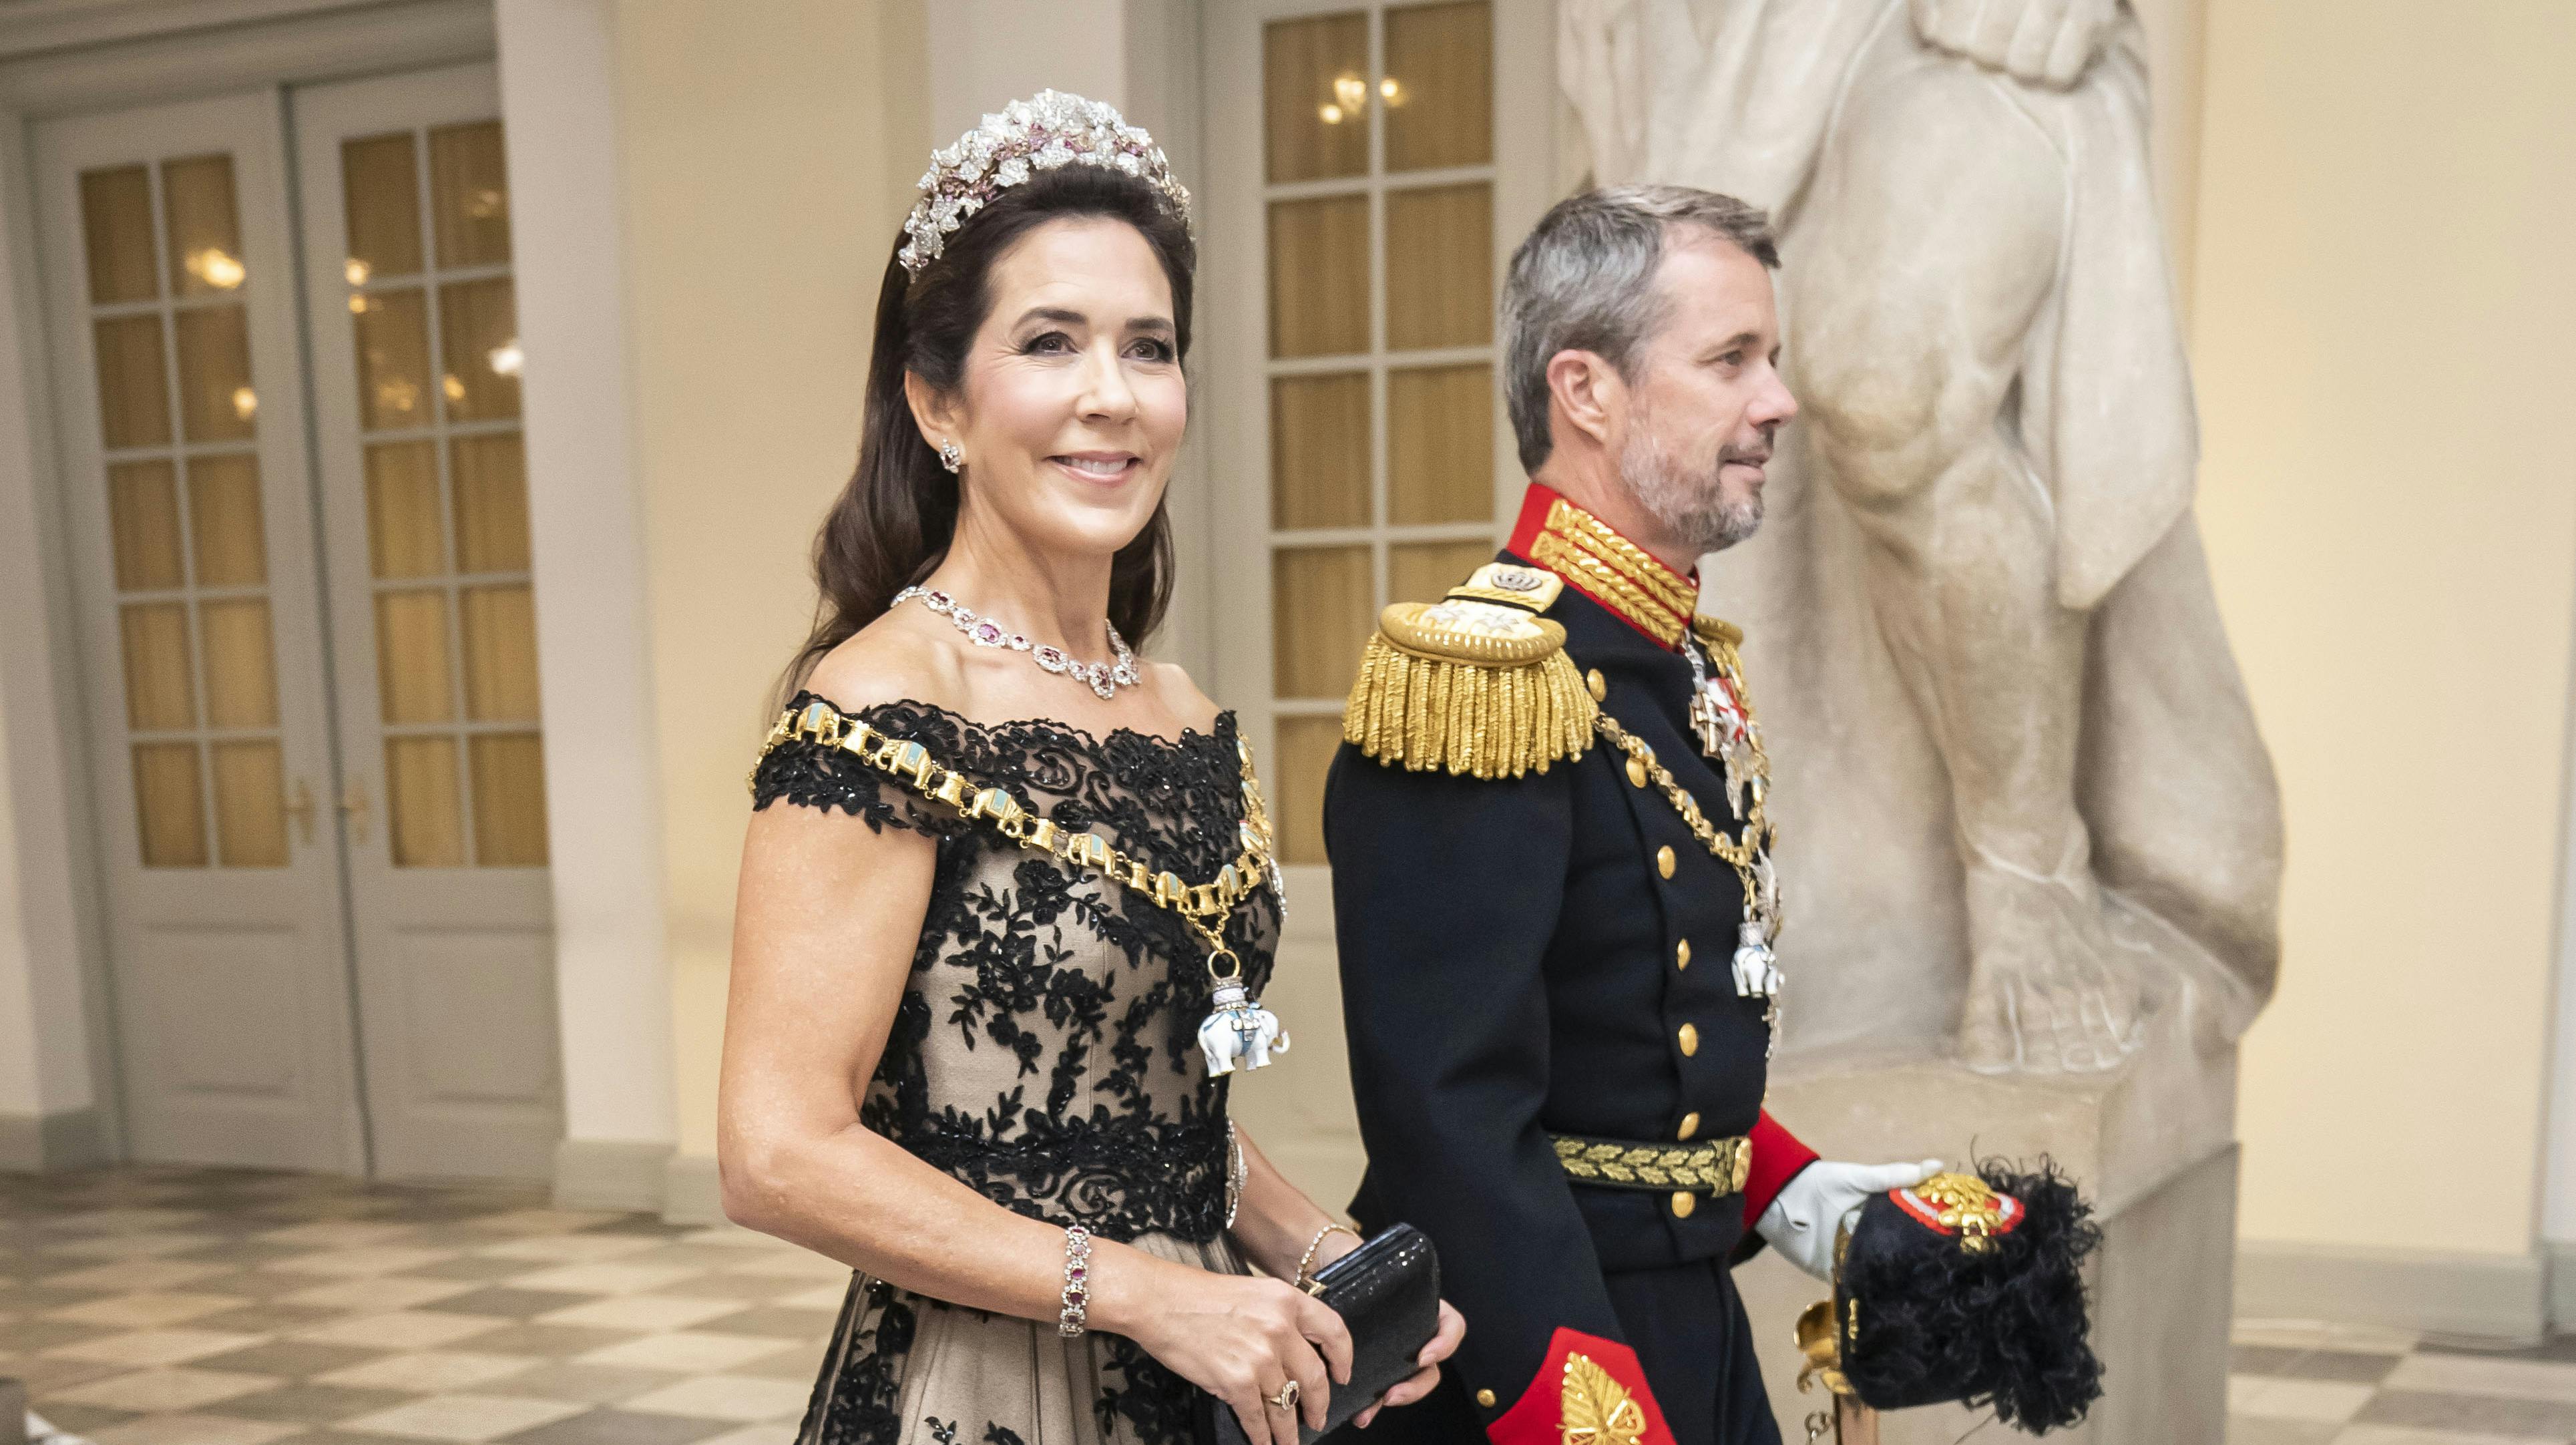 Her er kronprinsesse Mary og kronprins Frederik fotograferet i forbindelse med dronning Margrethes gallataffel.&nbsp;